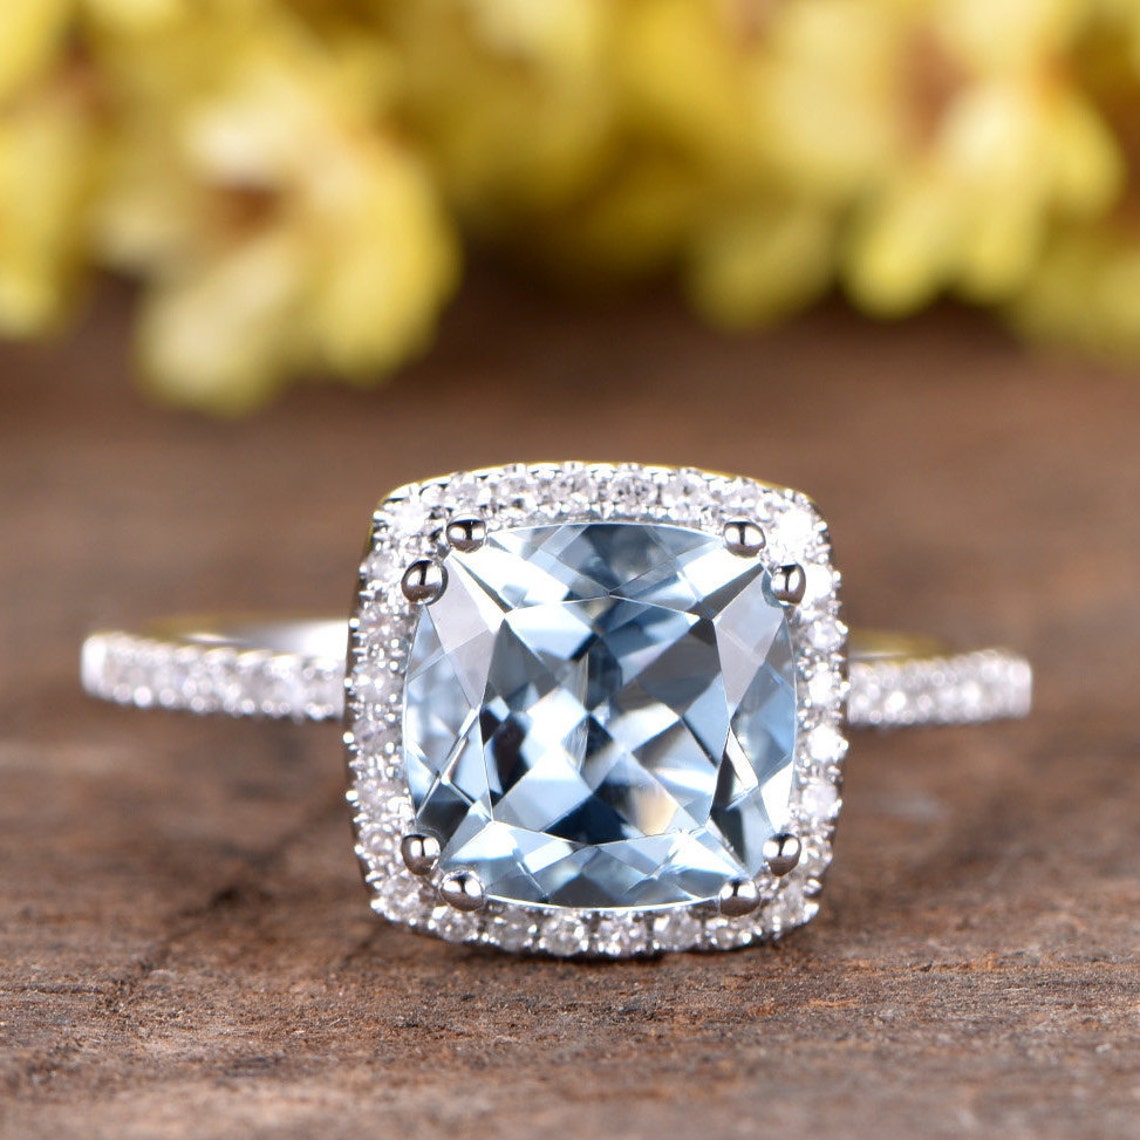 2.3 Carat Aquamarine Engagement Ring Diamond Wedding Band - Etsy